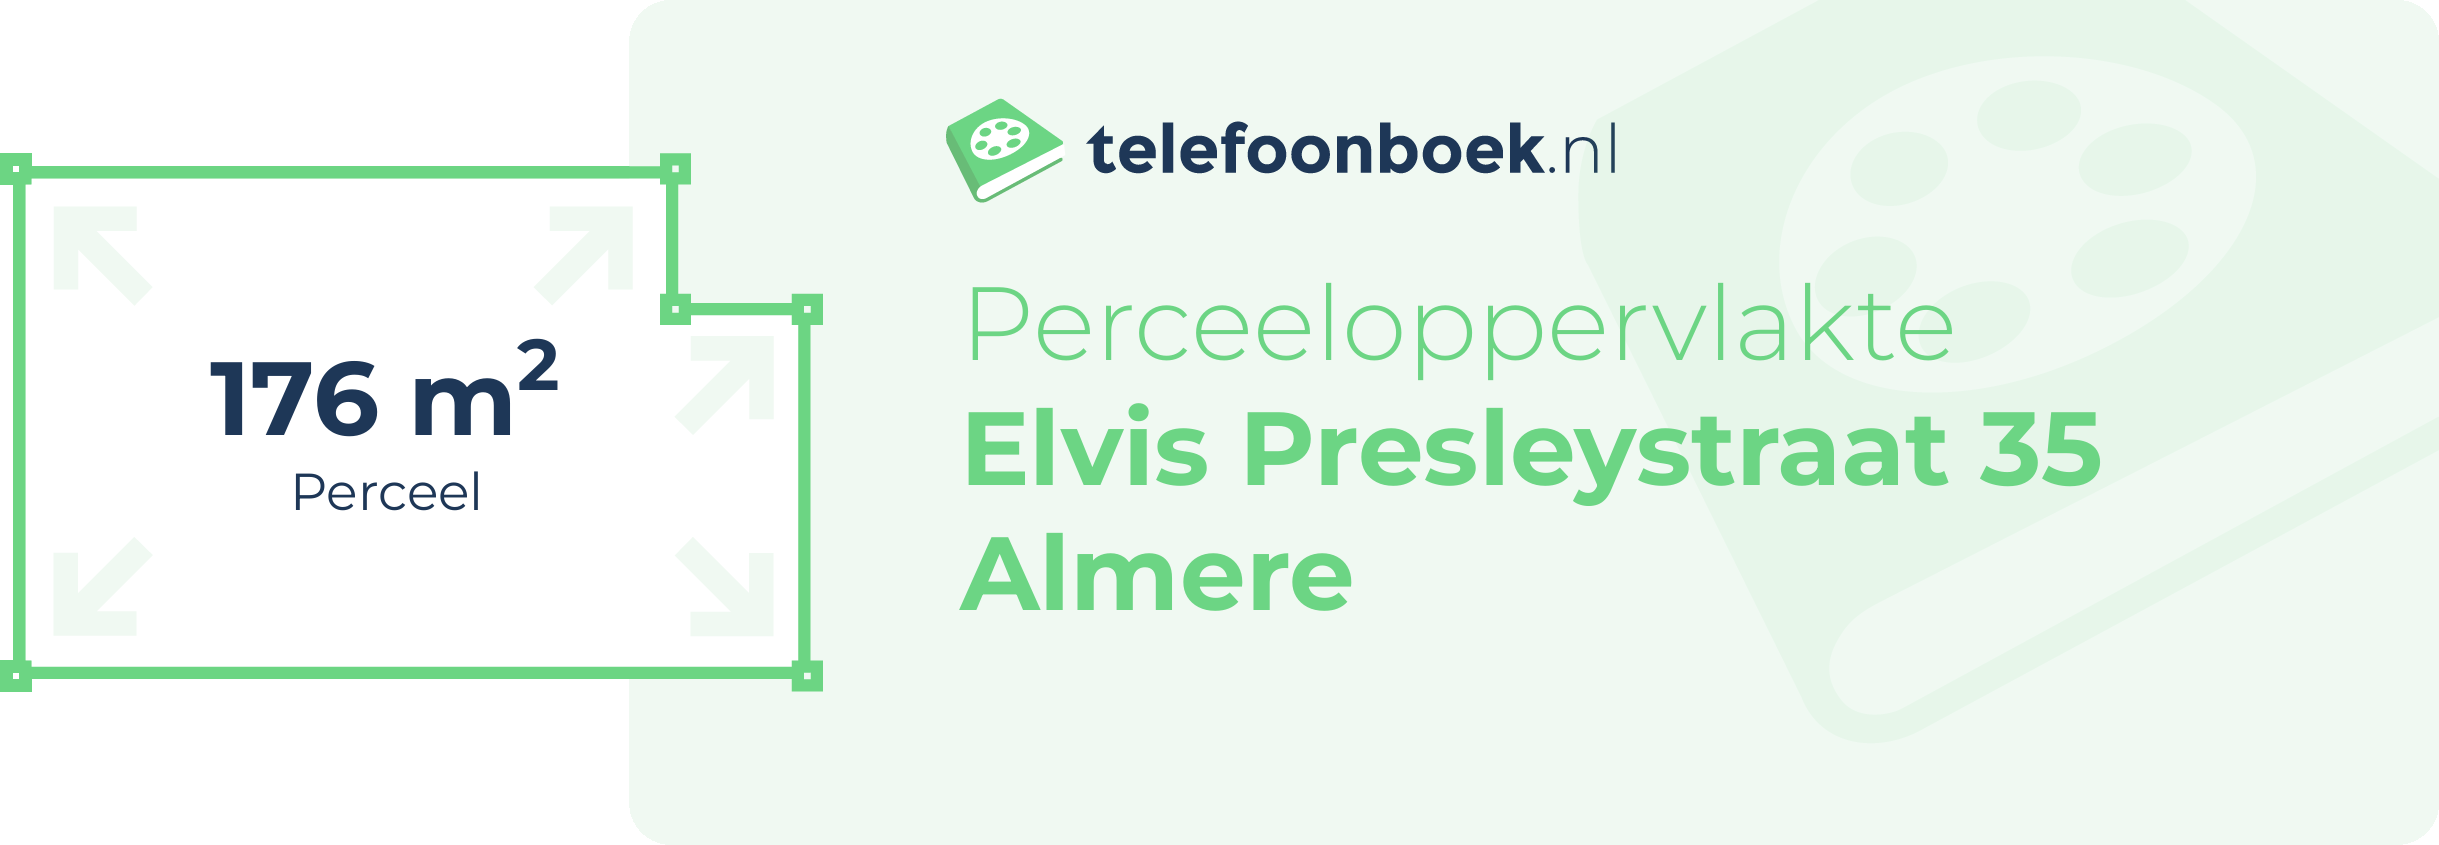 Perceeloppervlakte Elvis Presleystraat 35 Almere